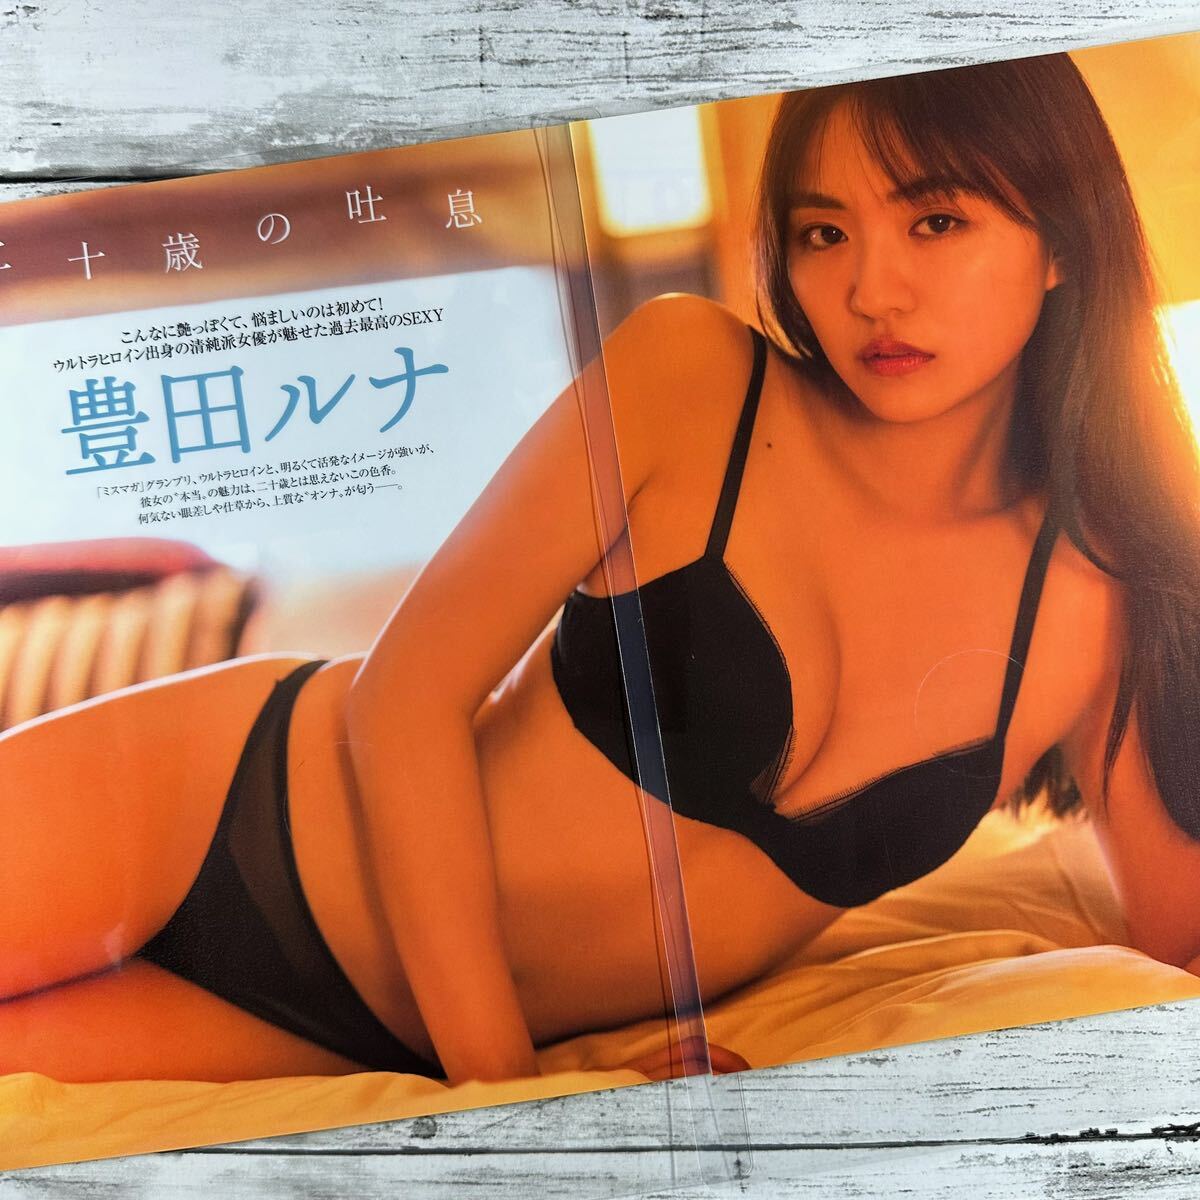 [ высокое качество ламинирование отделка ][ Toyota luna ] FRIDAY 2022 год 10/2 журнал вырезки 8P A4 плёнка купальный костюм bikini model актер женщина super 